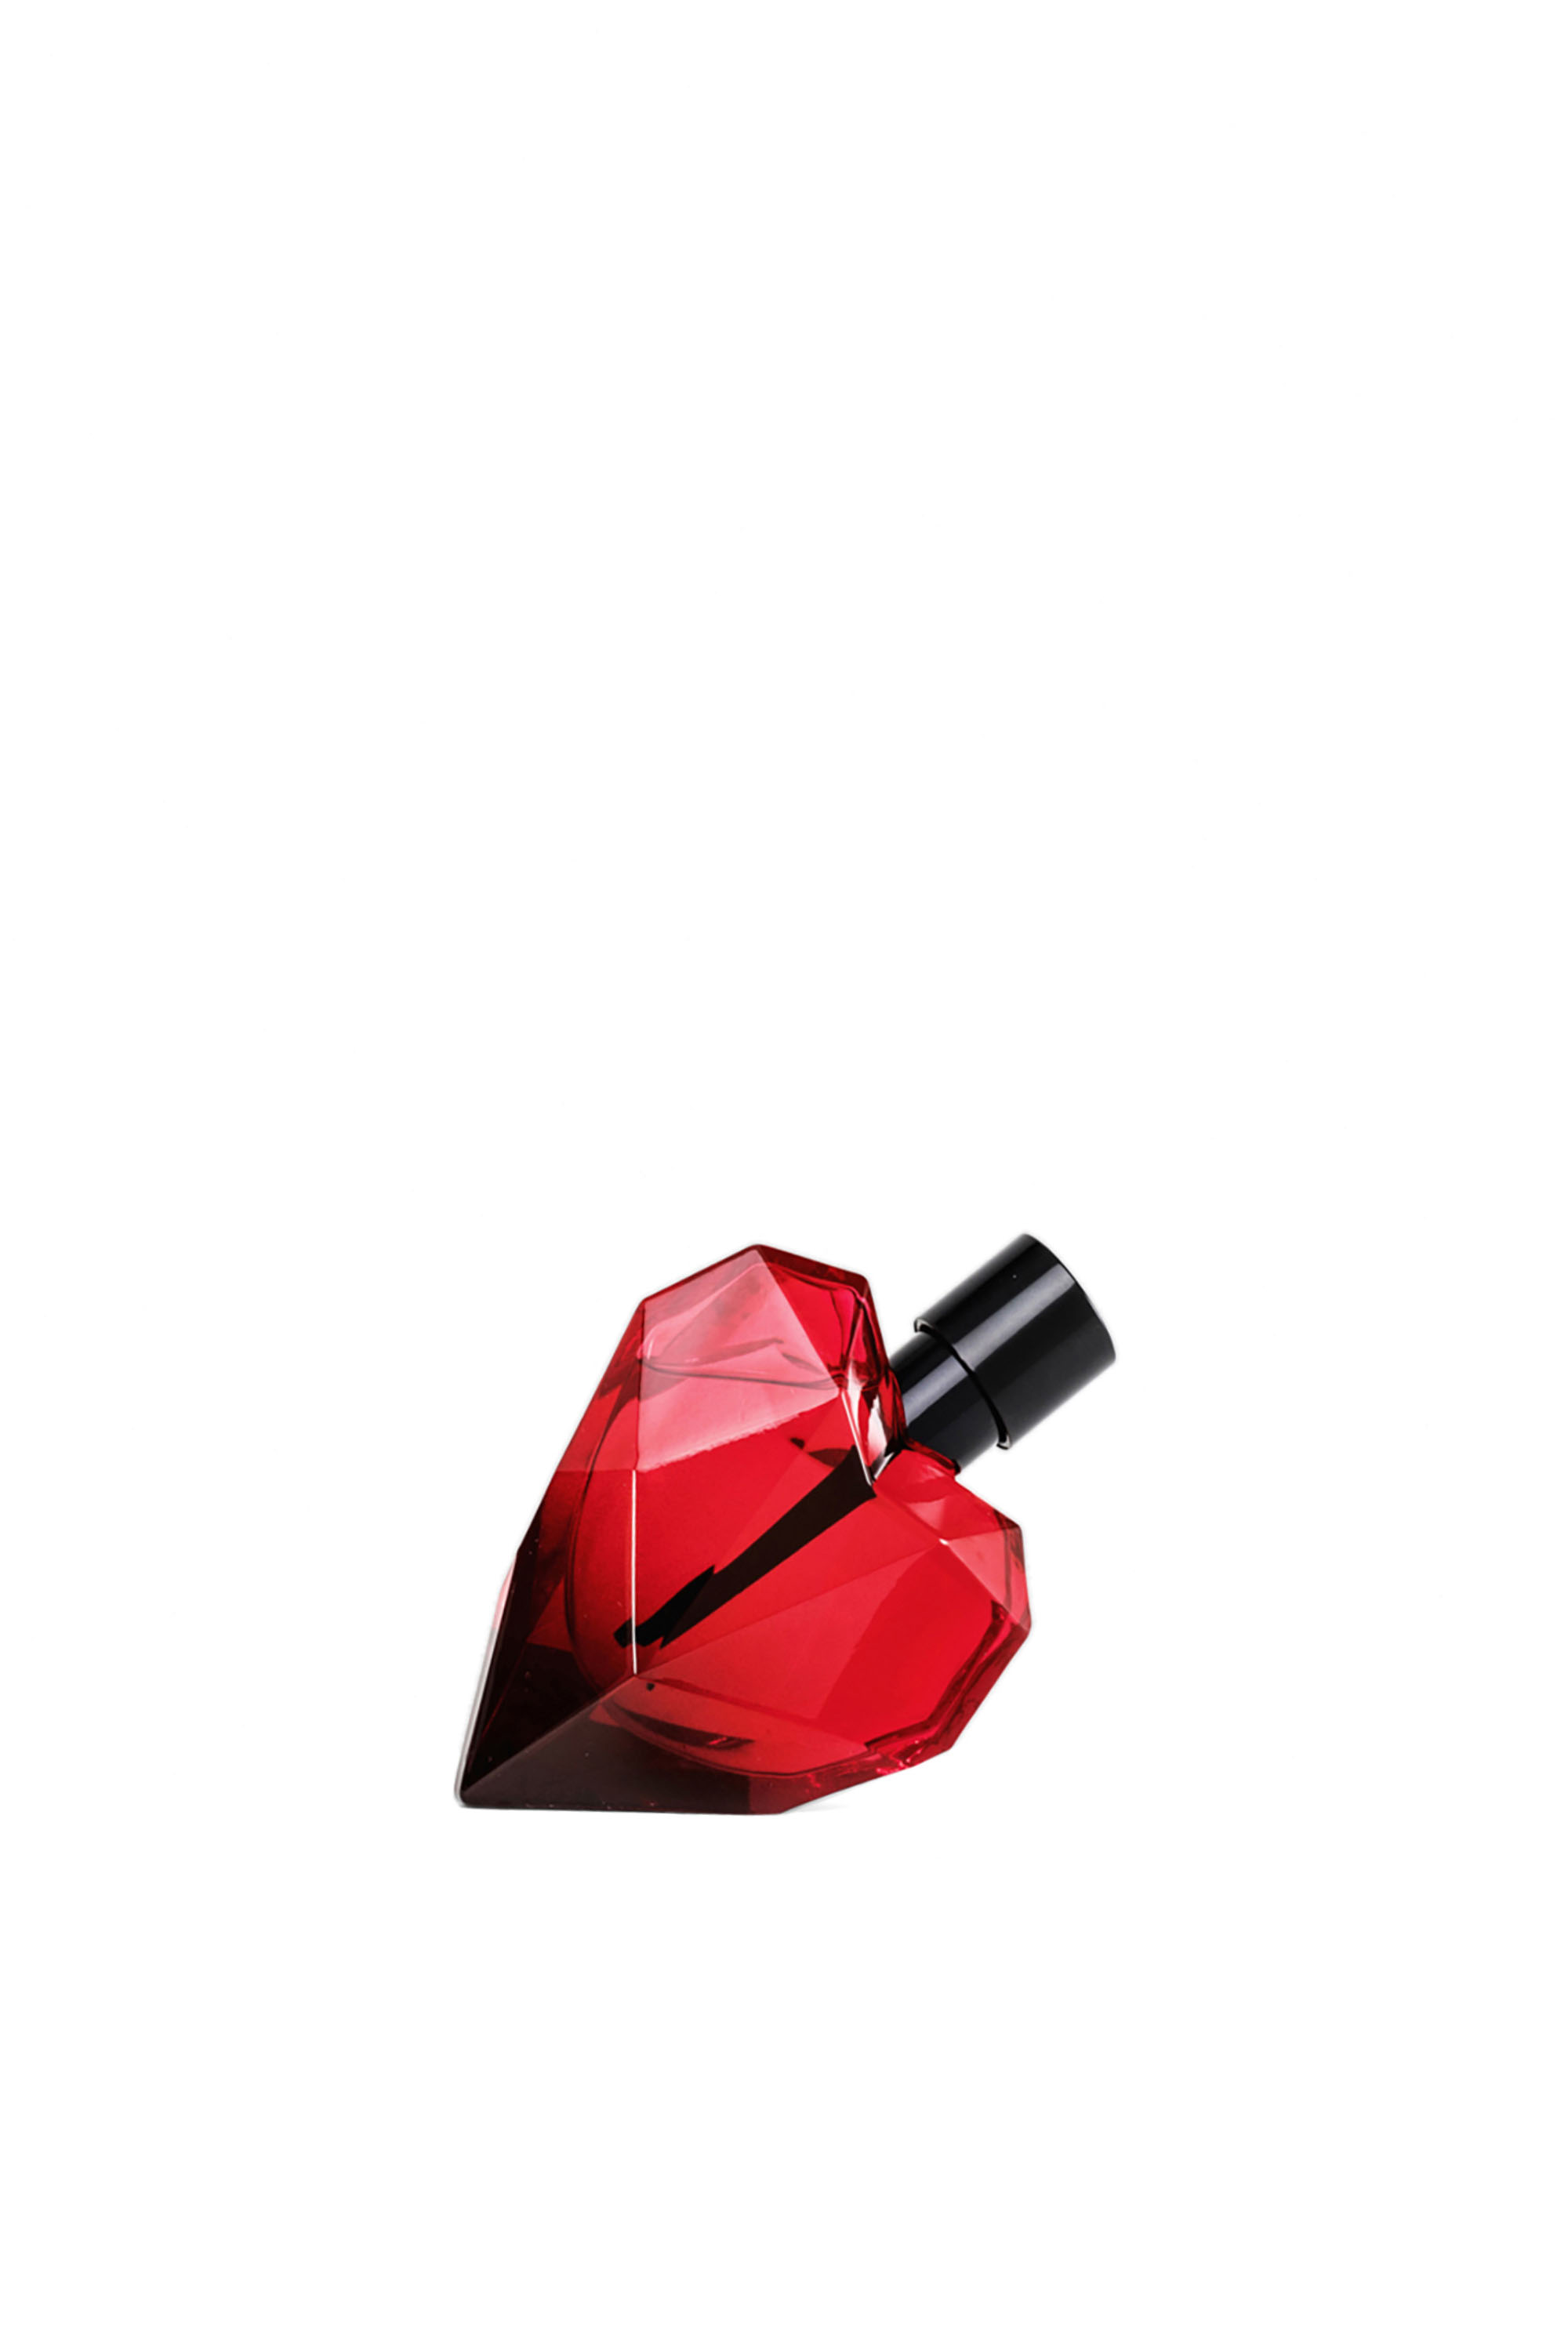 Diesel - LOVERDOSE RED KISS EAU DE PARFUM 50ML,  - Image 1